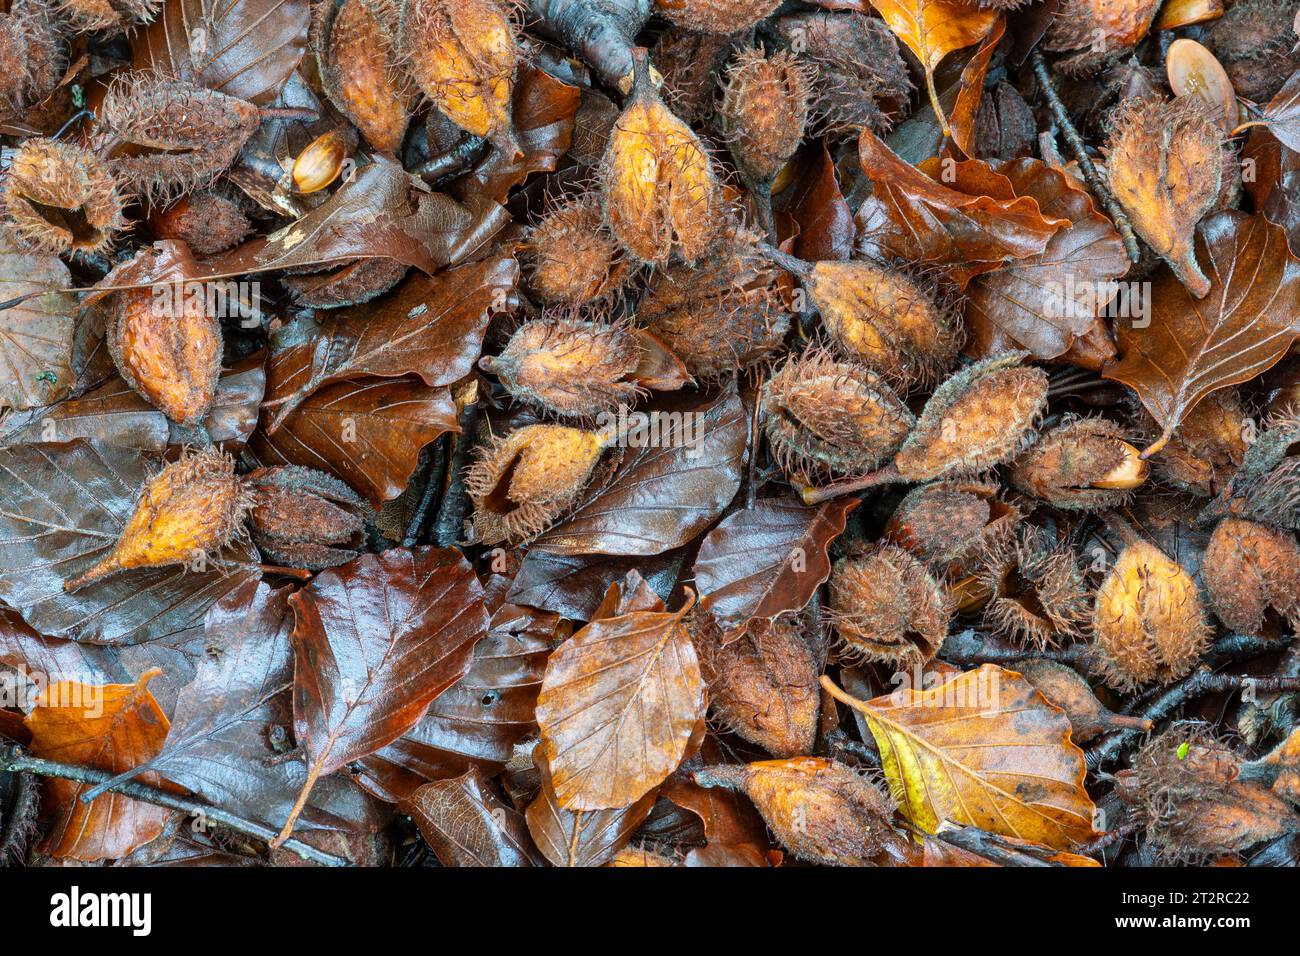 Beech mast beechmast beech nuts on woodland floor during October autumn fall, UK Stock Photo